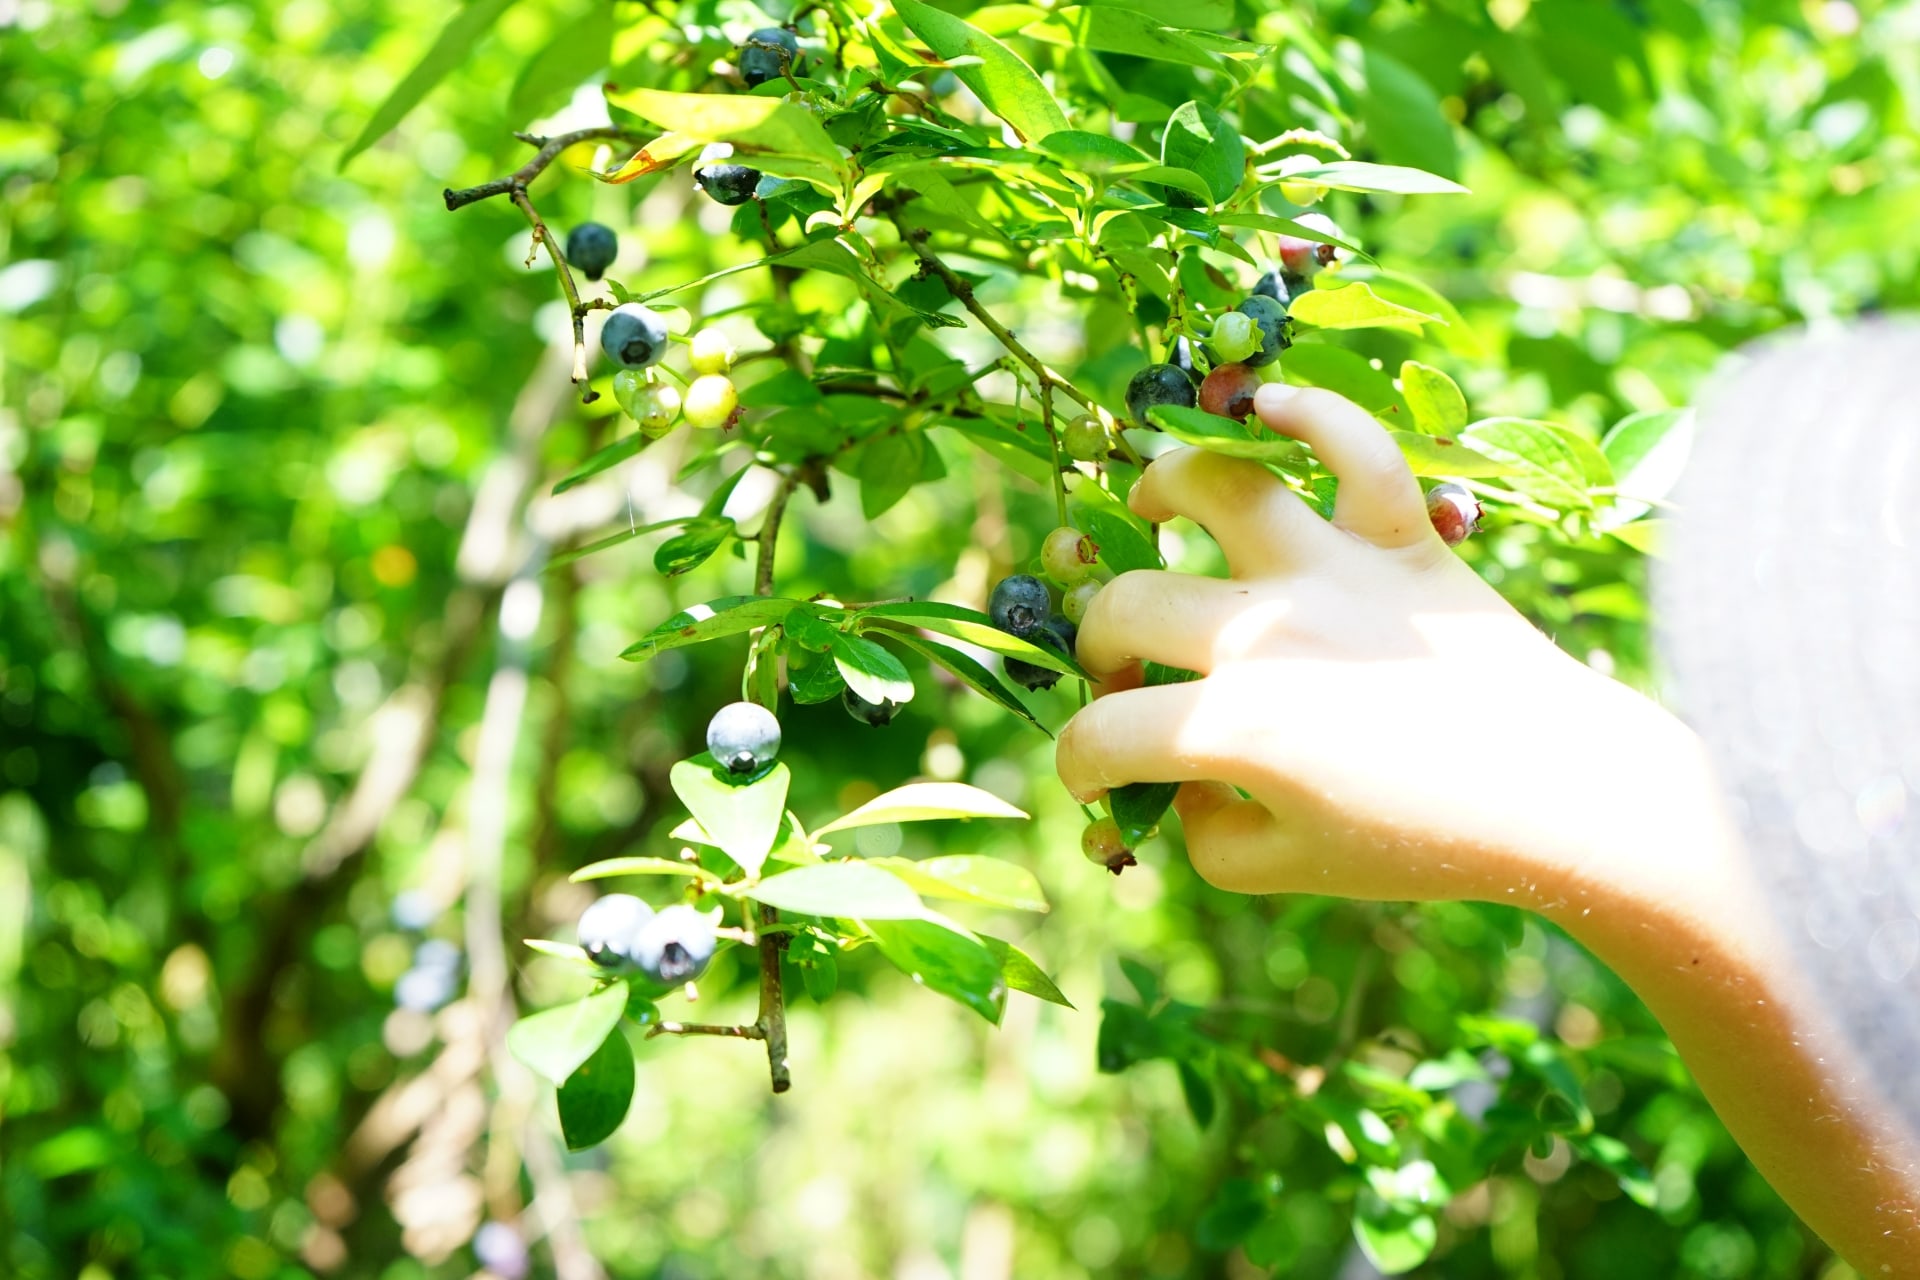 家庭菜園でブルーベリーを育て始めるベストな時期 ブルーベリーの栽培 鉢植え 剪定 肥料 方法と健康効果ナビ